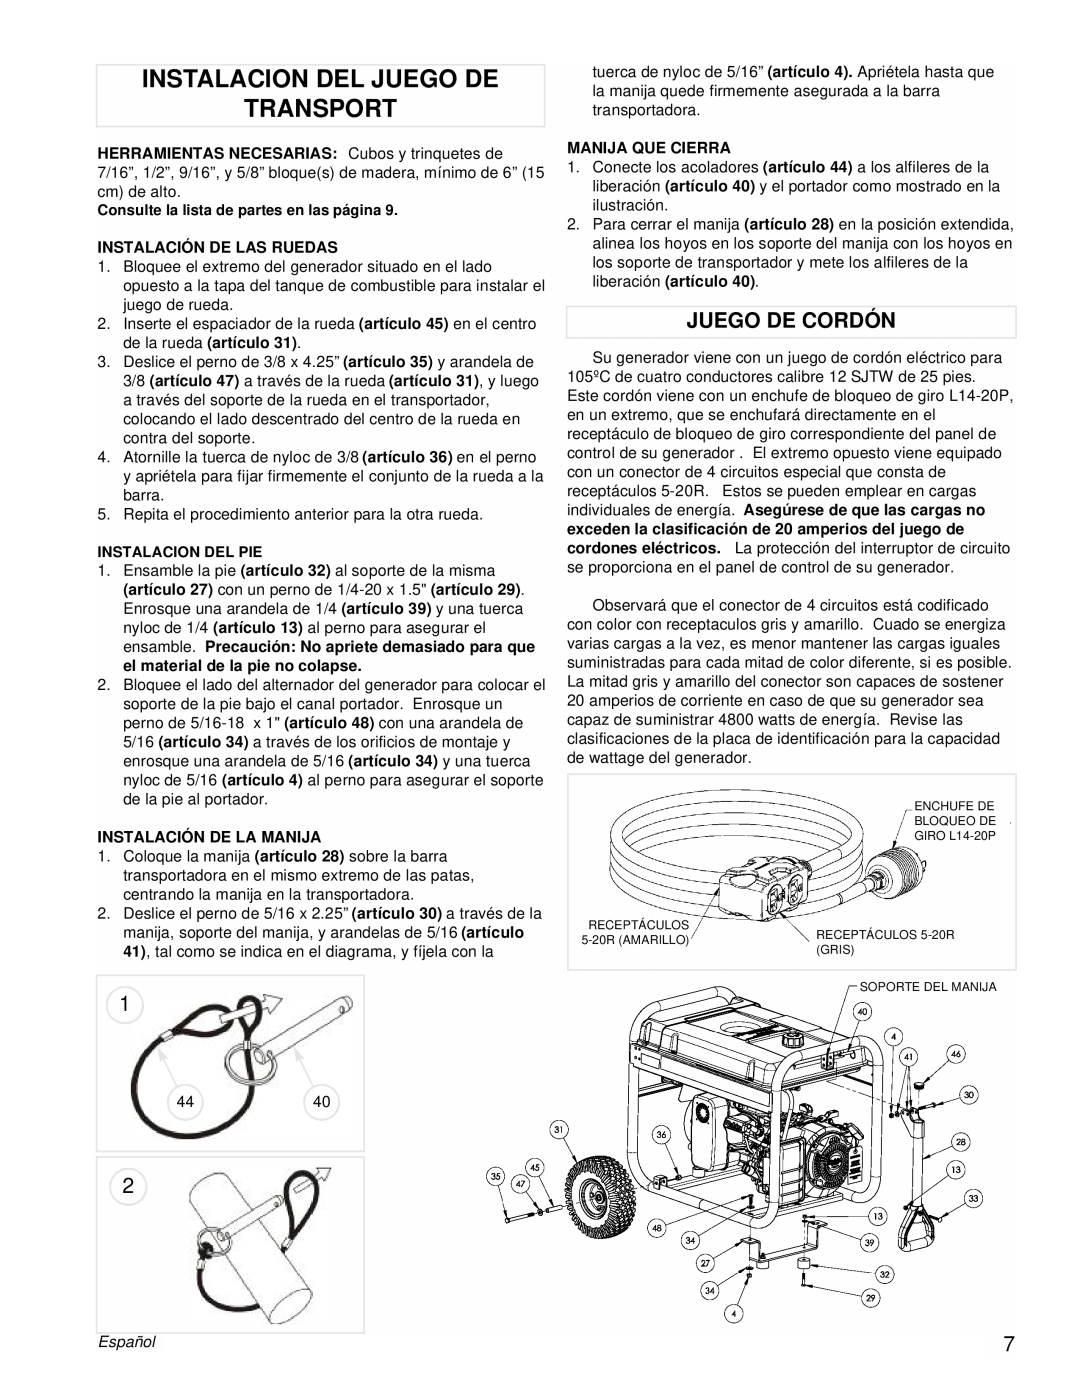 Powermate PM0435255 manual Instalacion Del Juego De Transport, Juego De Cordón, Español 